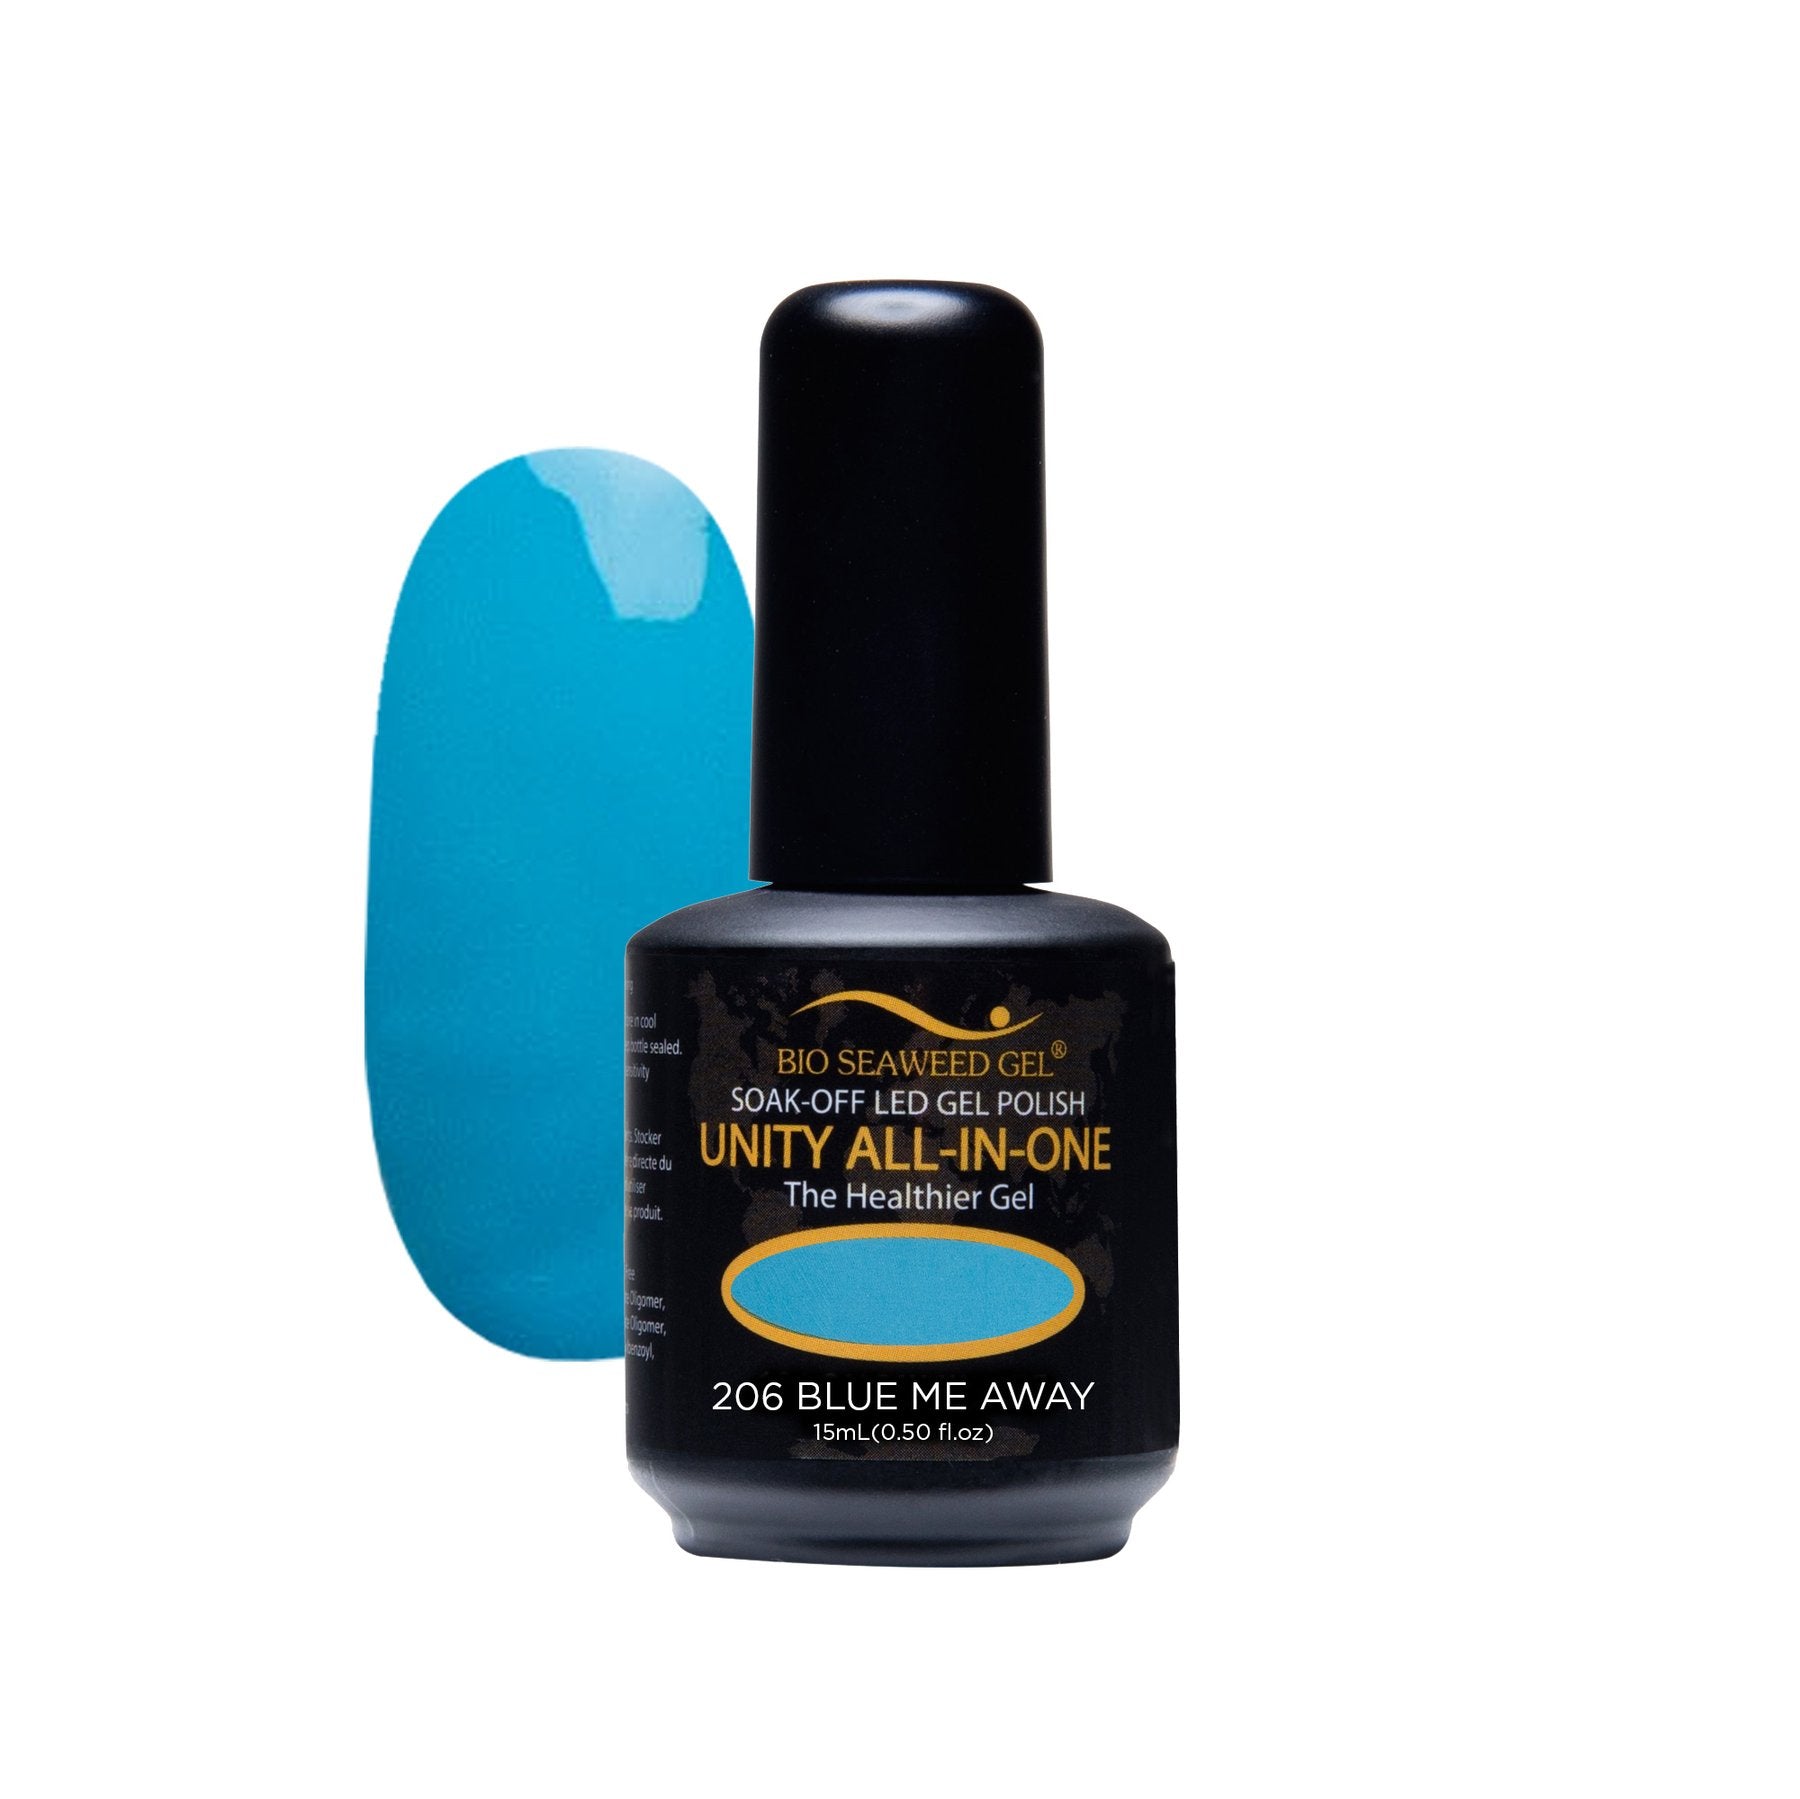 206 Blue Me Away | Bio Seaweed Gel® - CM Nails & Beauty Supply